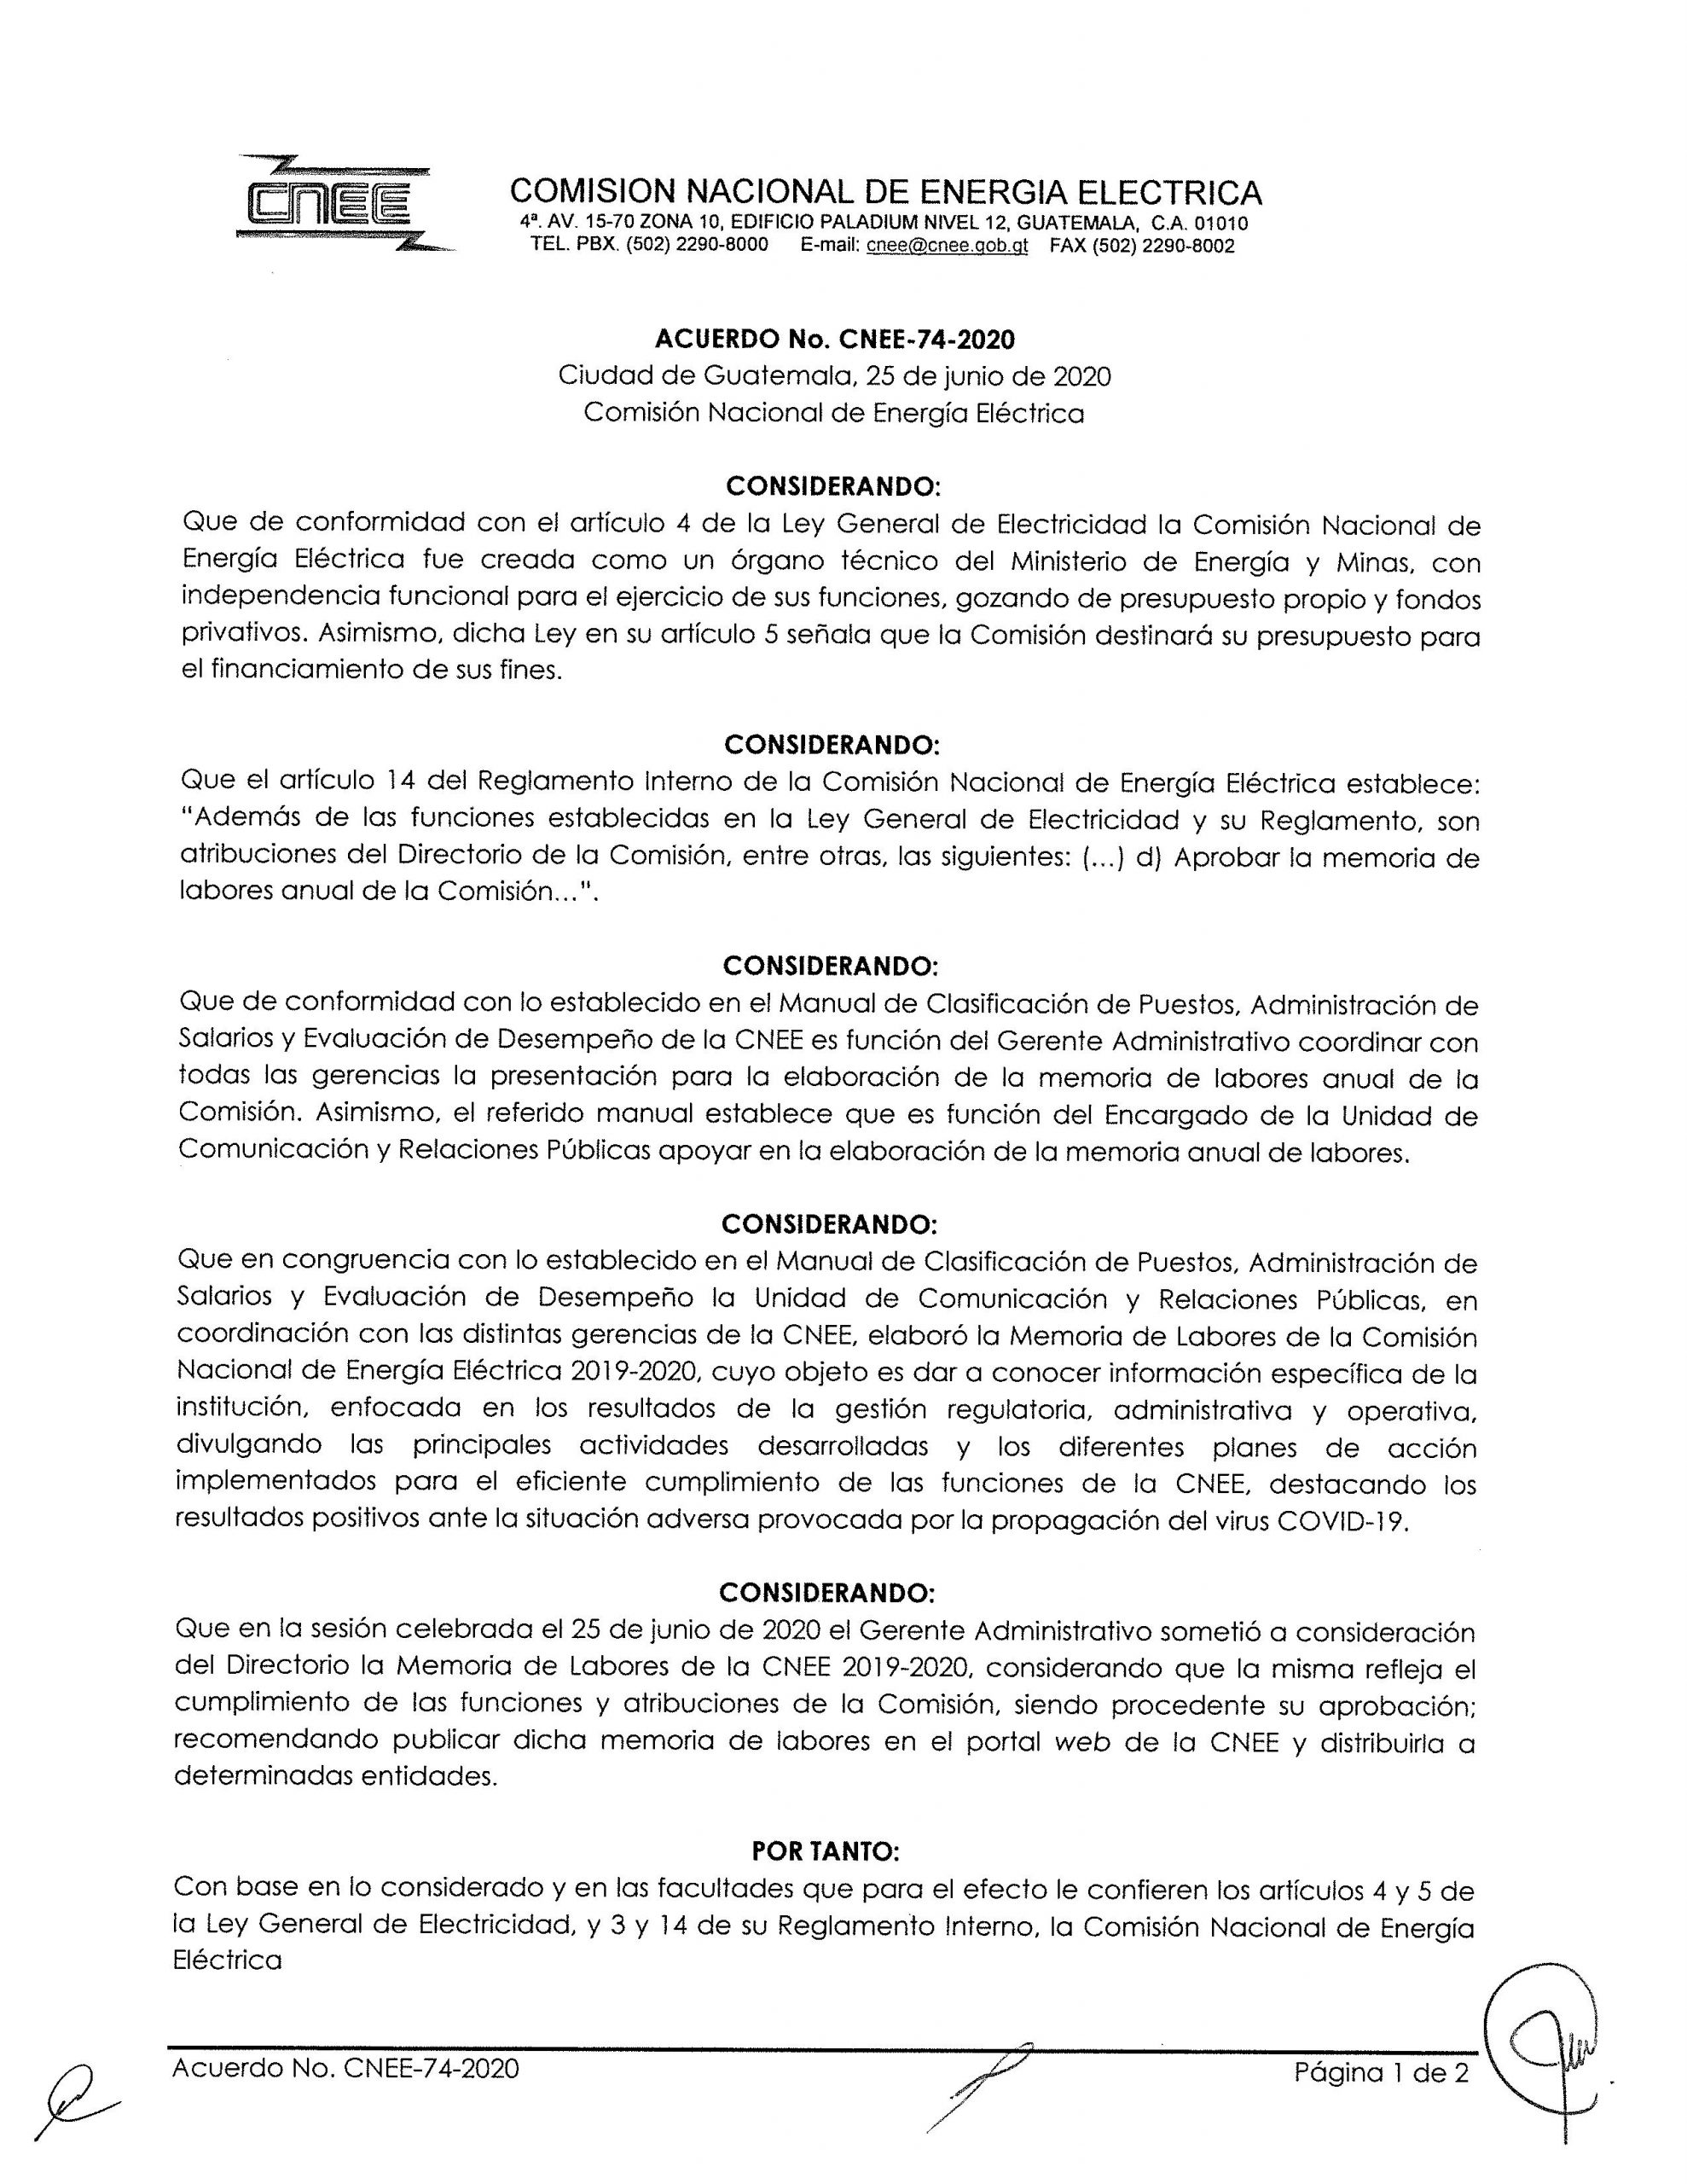 Acuerdo CNEE-74-2020: Aprobación de la Memoria de Labores 2019-2020